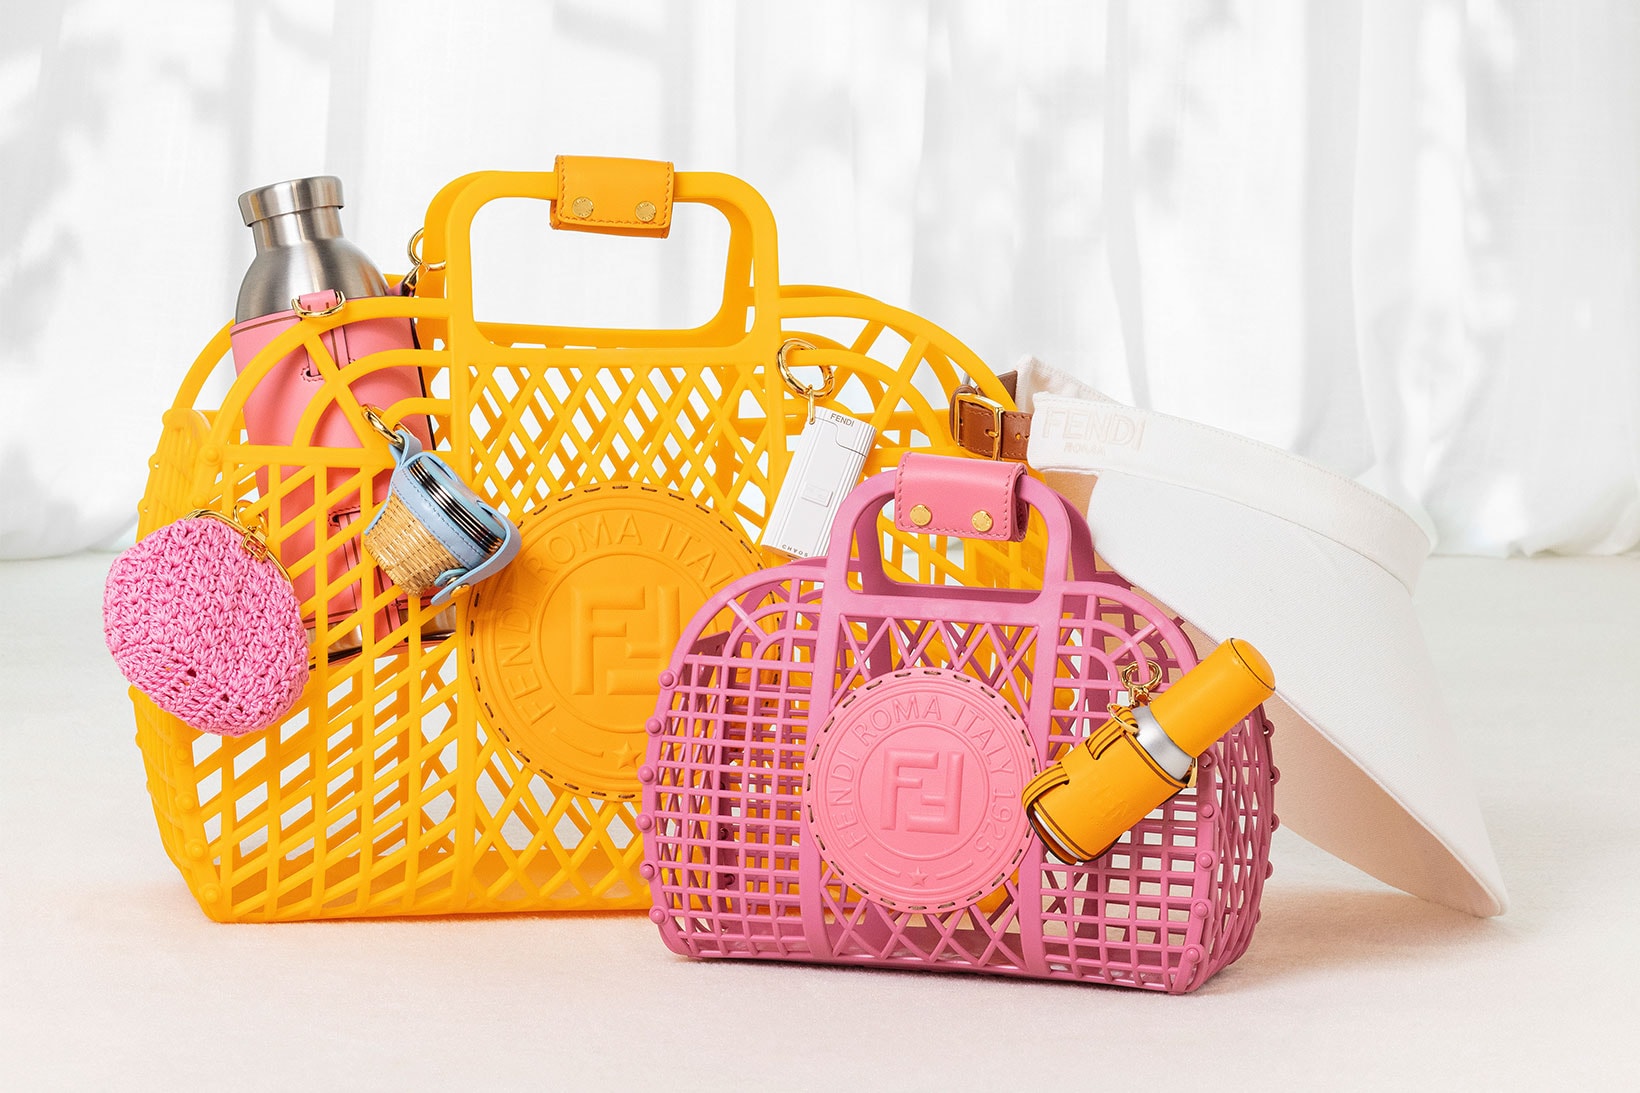 fendi spring summer 2021 ss21 basket handbags recycled pvc yellow pink water bottles